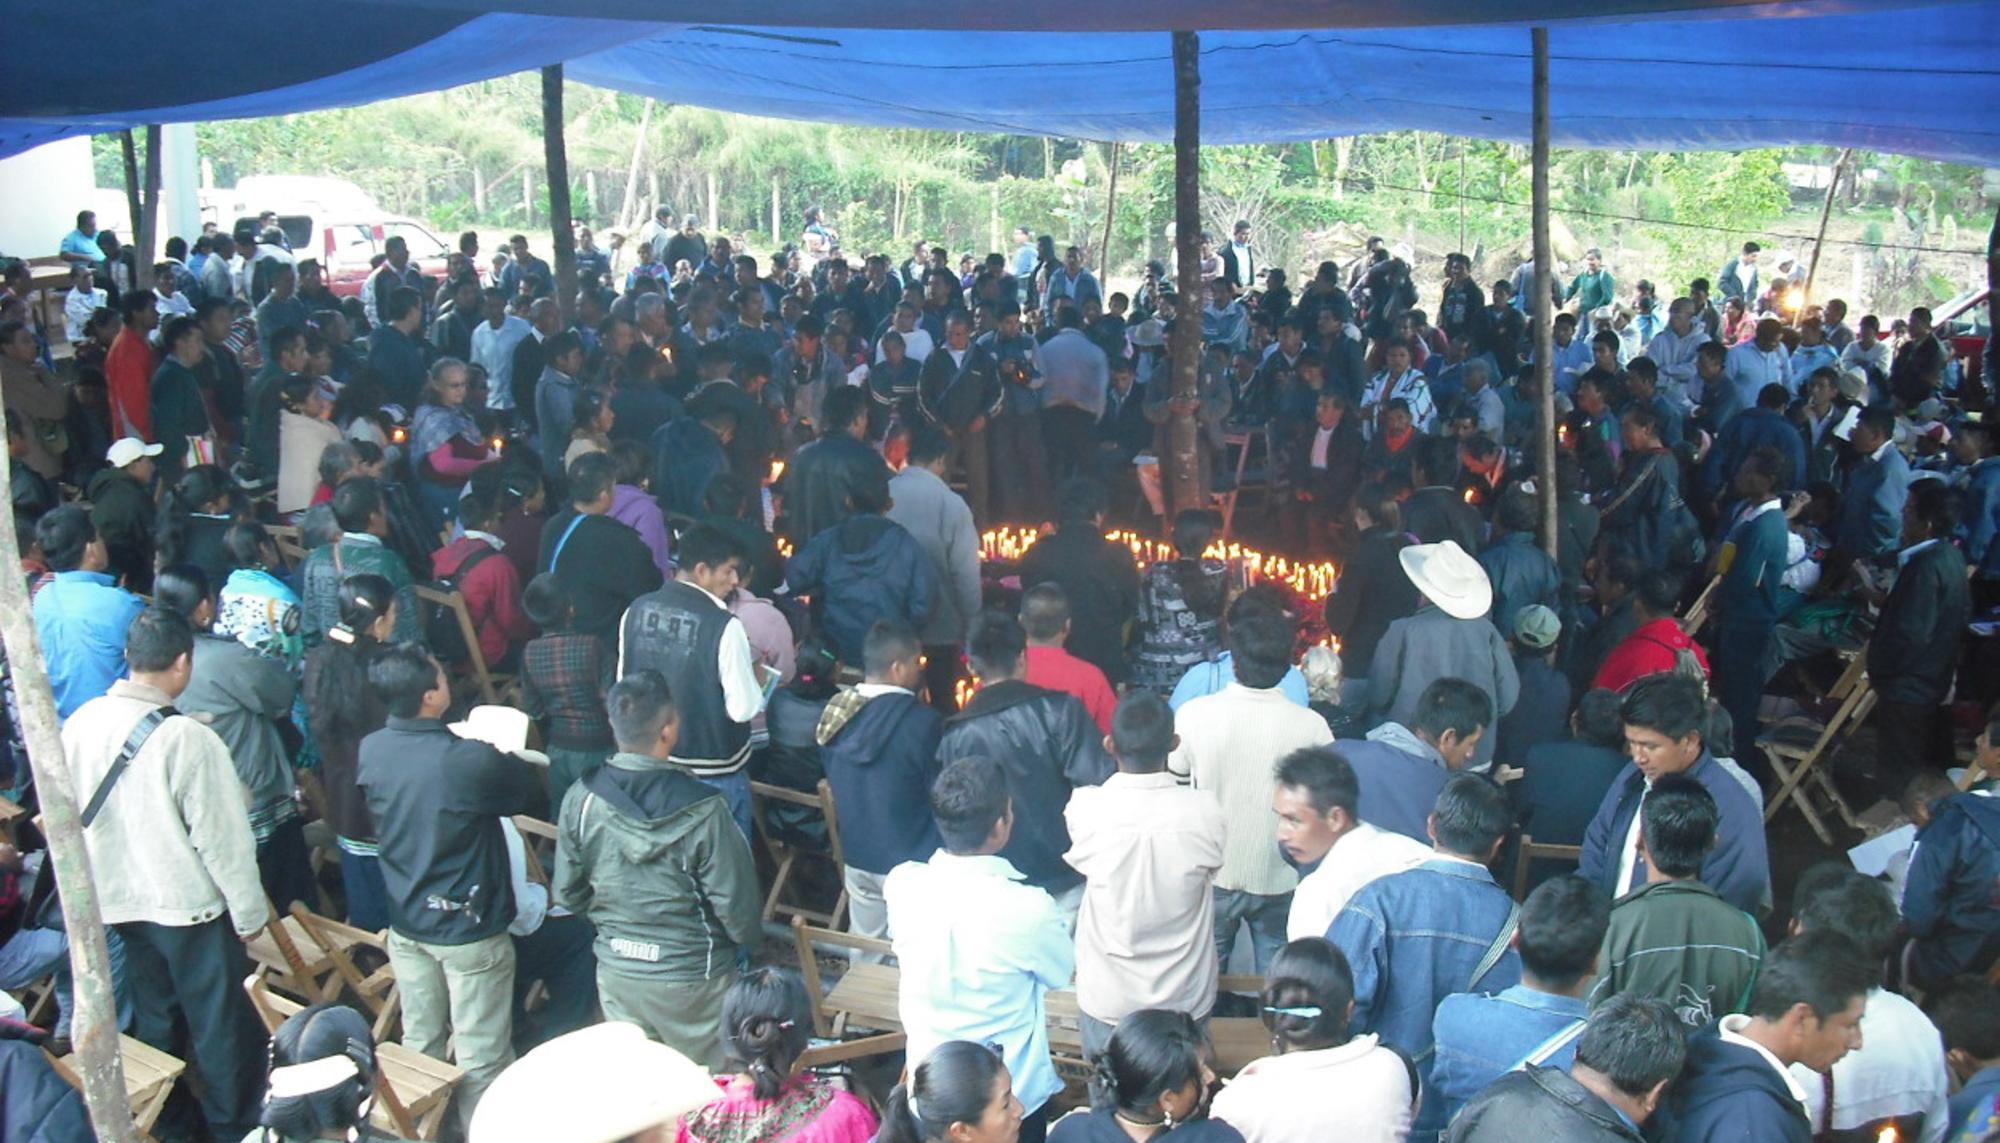 Justicia indígena (Chiapas, México)